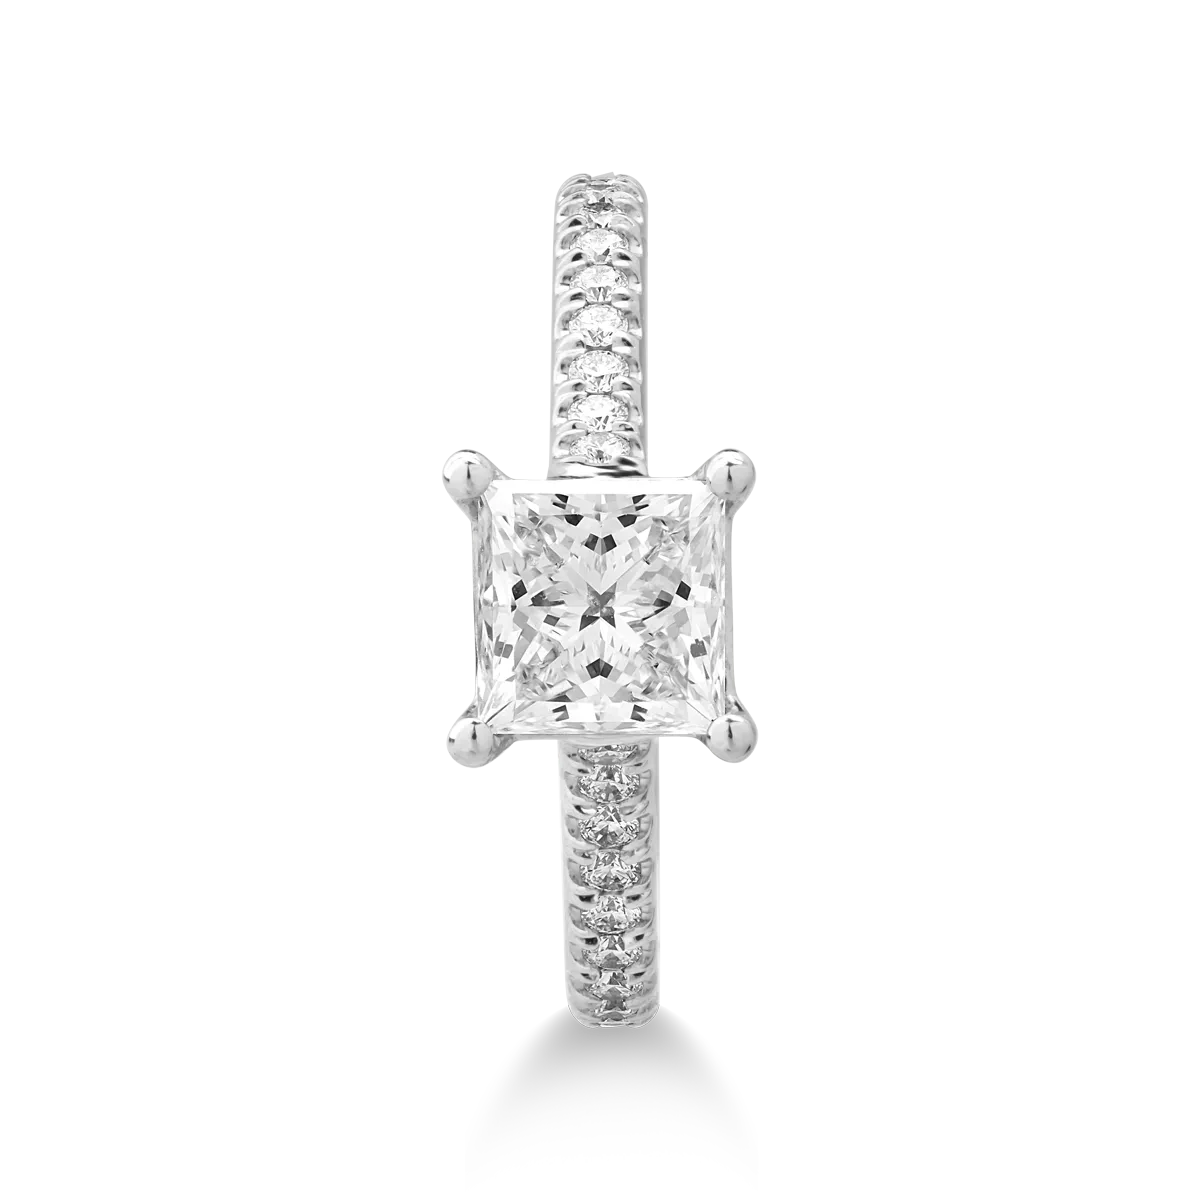 Годежен пръстен от платина с диамант 1.51гкт u диаманти 0.33гкт